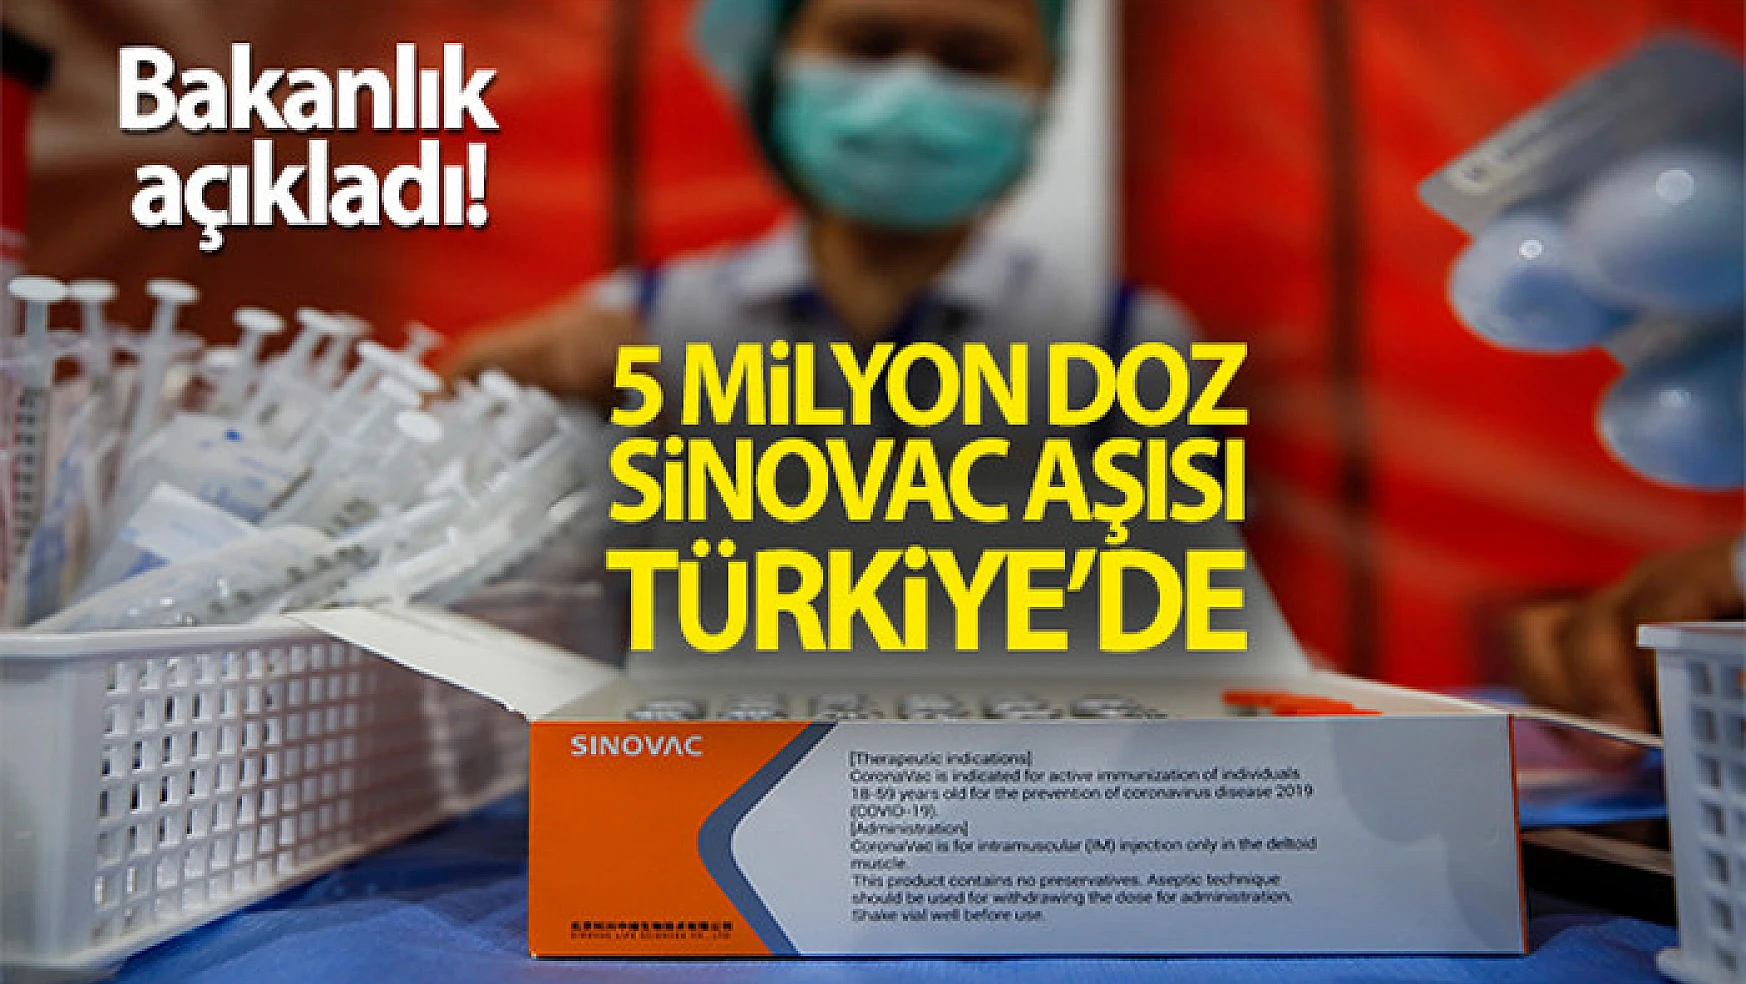 Bakanlık açıkladı! 5 milyon doz Sinovac aşısı Türkiye'de